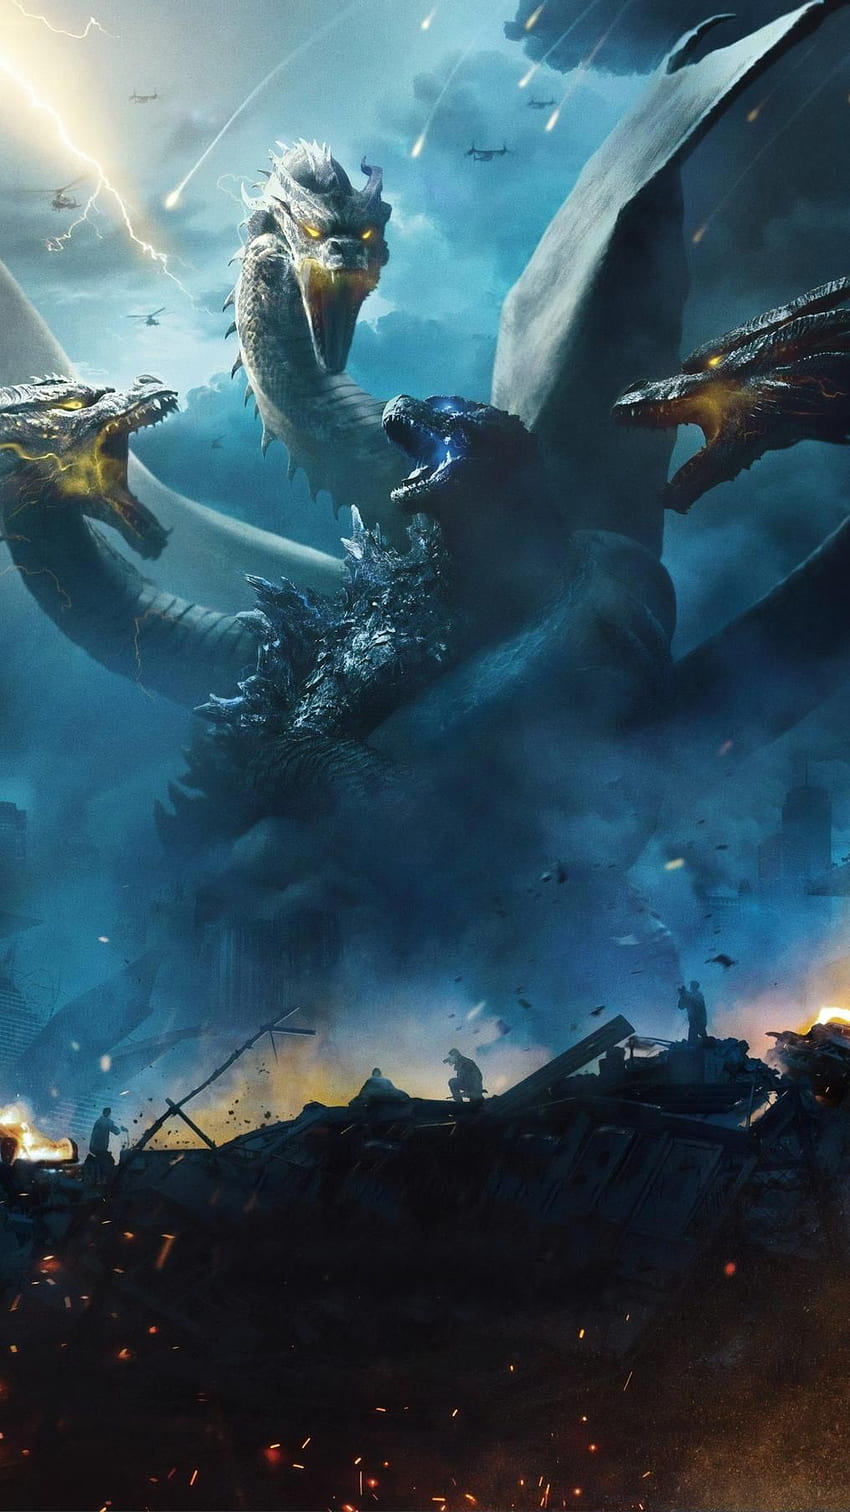 Godzilla: Rey de los monstruos (2019) Teléfono. Cinemanía. Godzilla, Godzilla contra el rey Ghidorah, Godzilla fondo de pantalla del teléfono